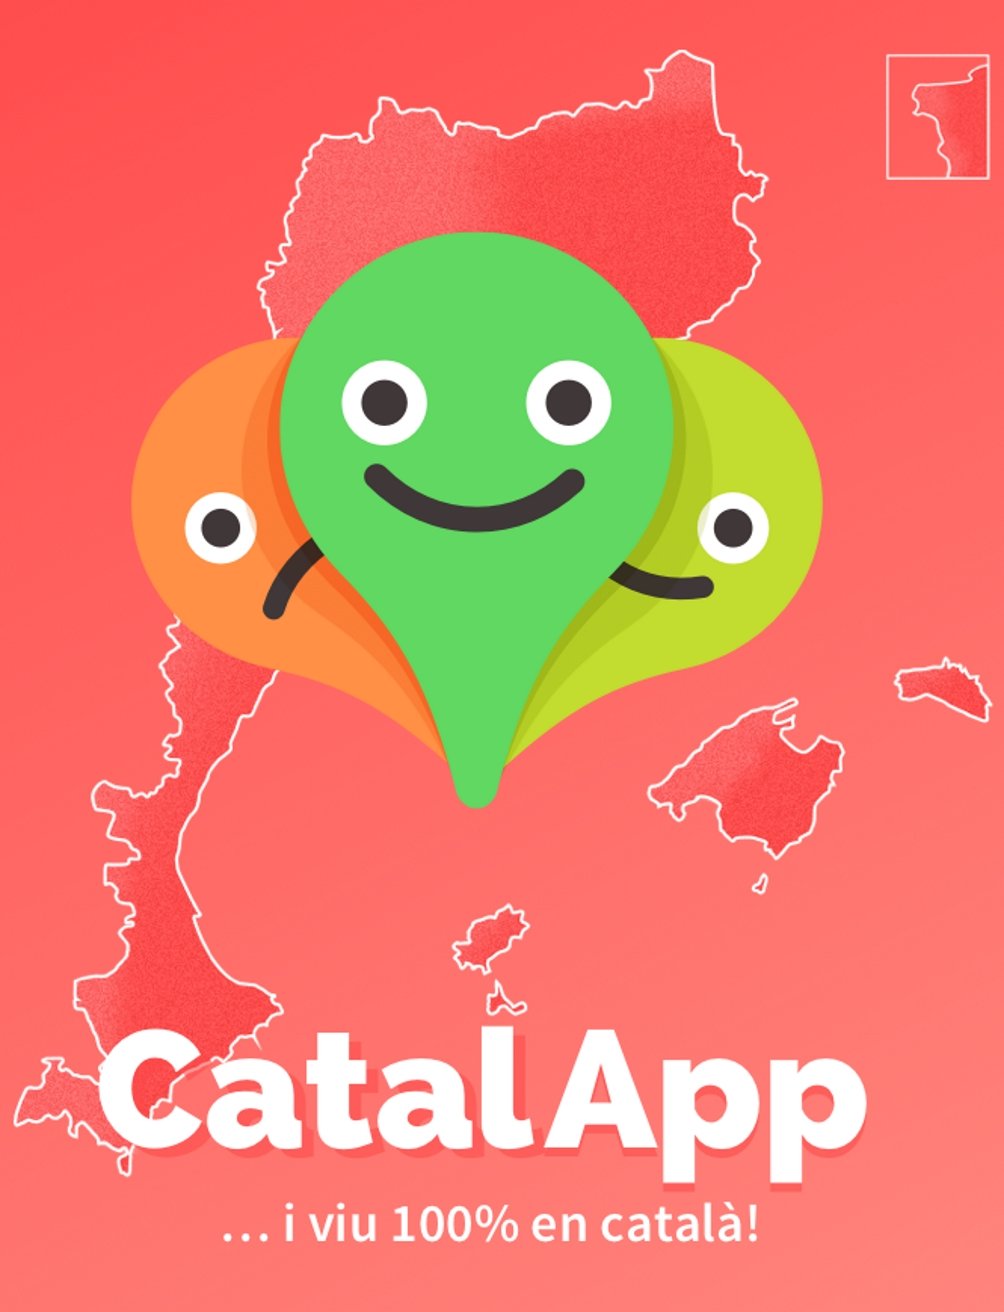 CatalApp: una app para consumir en catalán